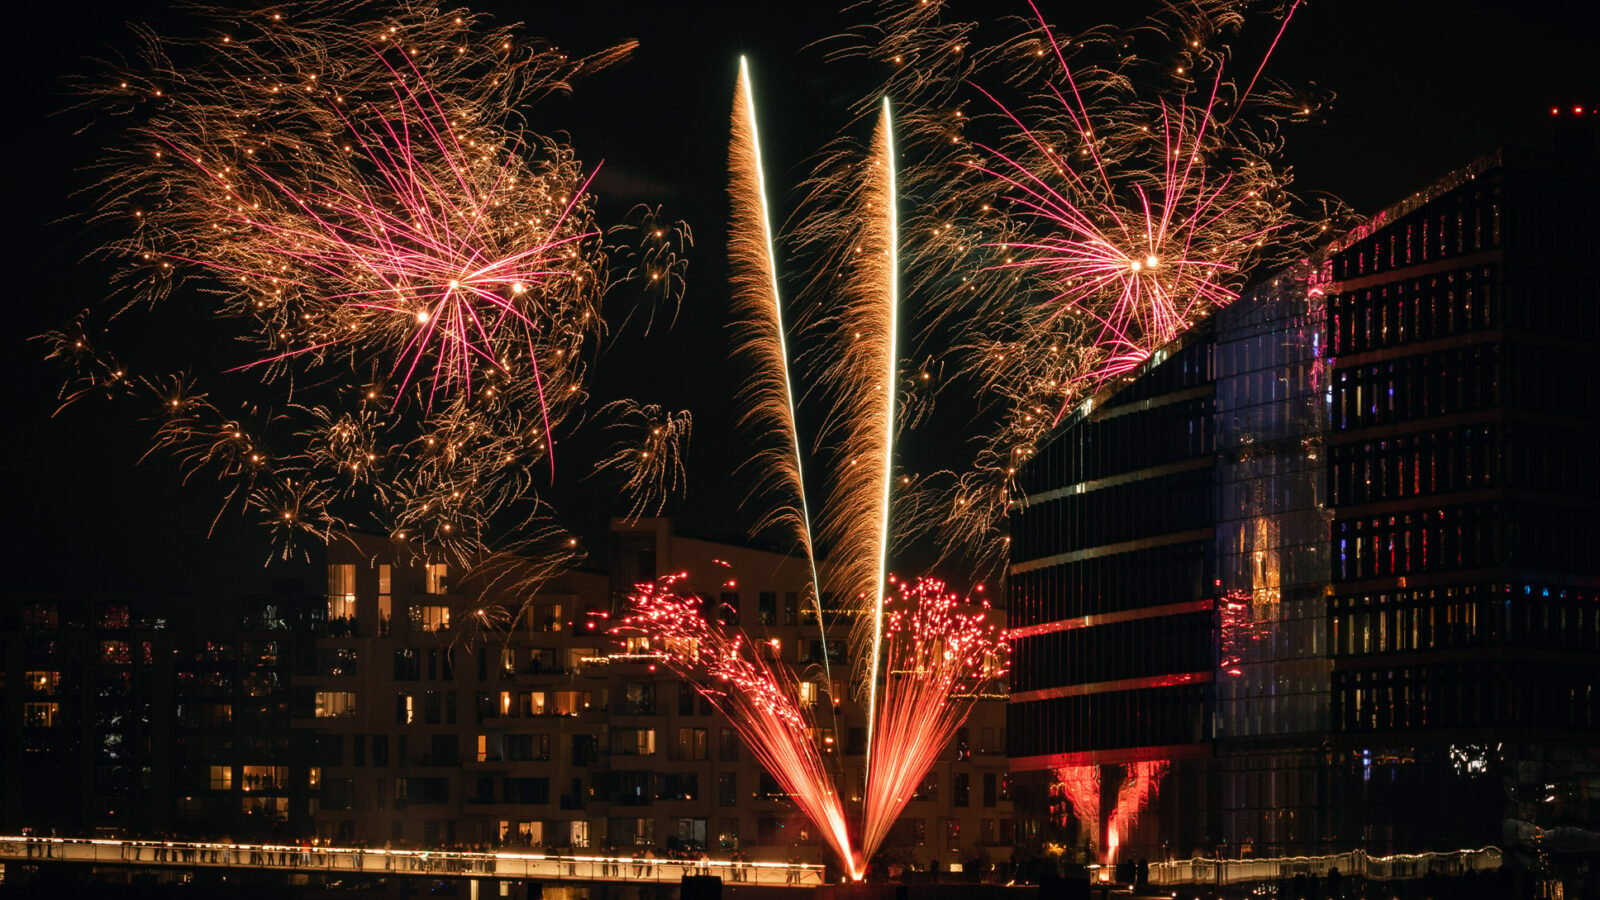 fireworks light up modern glass buildings in the Danish capital, Copenhagen